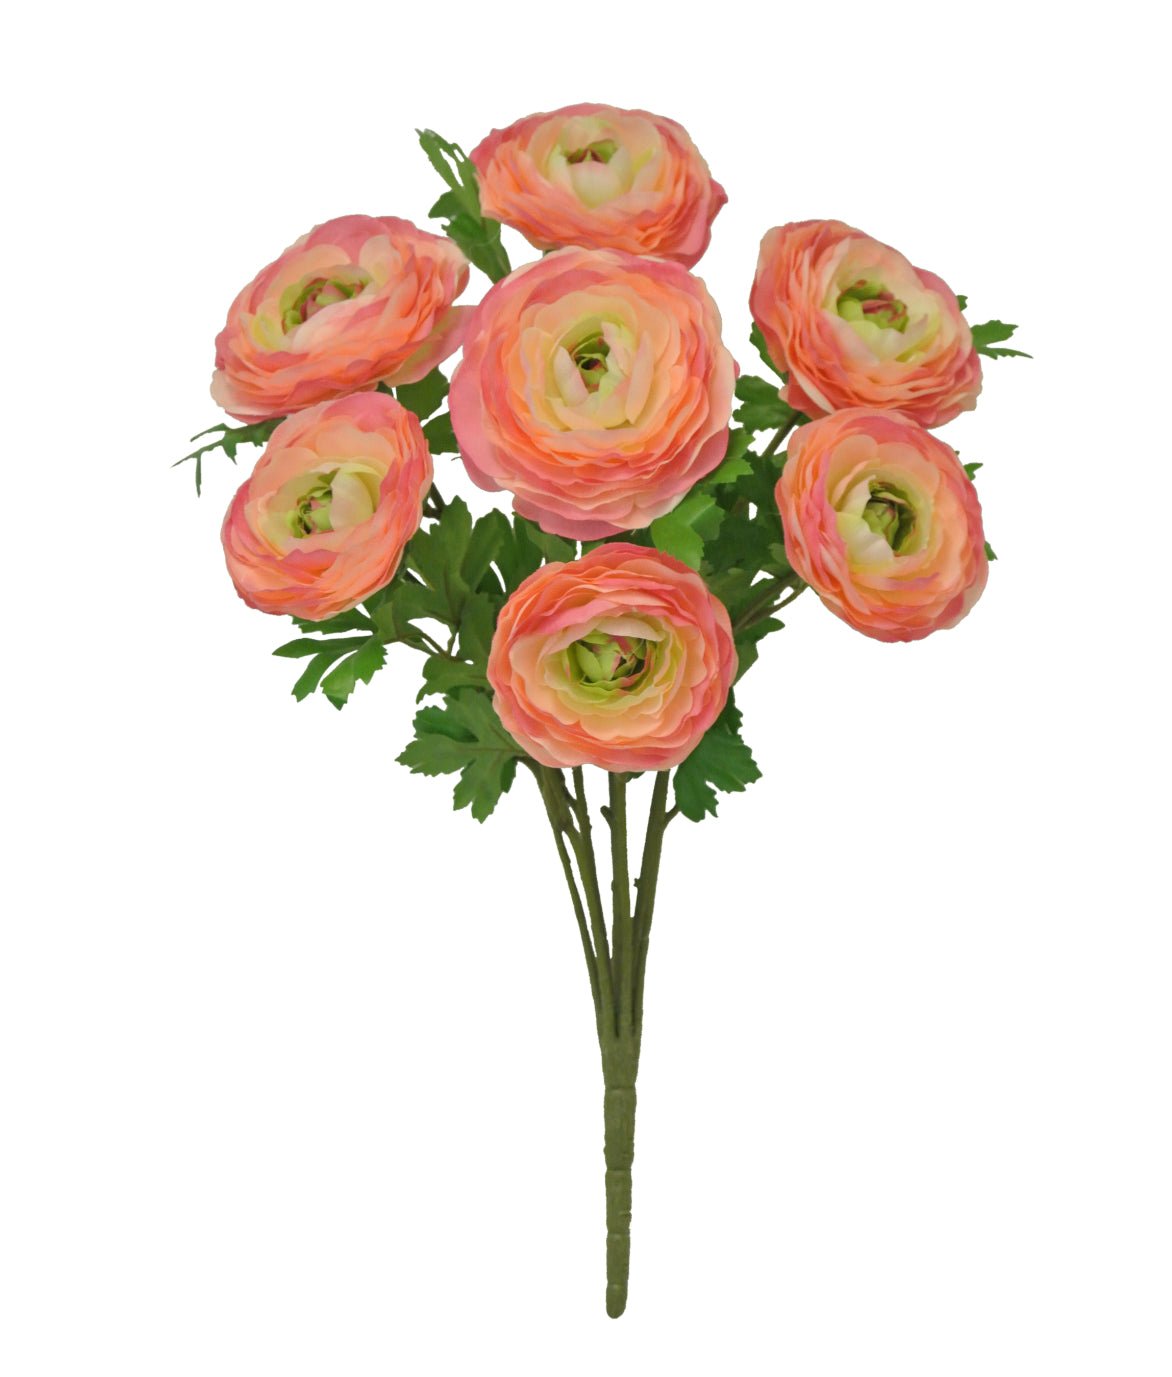 Ranunculus bush - pink - Greenery Marketartificial flowers81069-PK